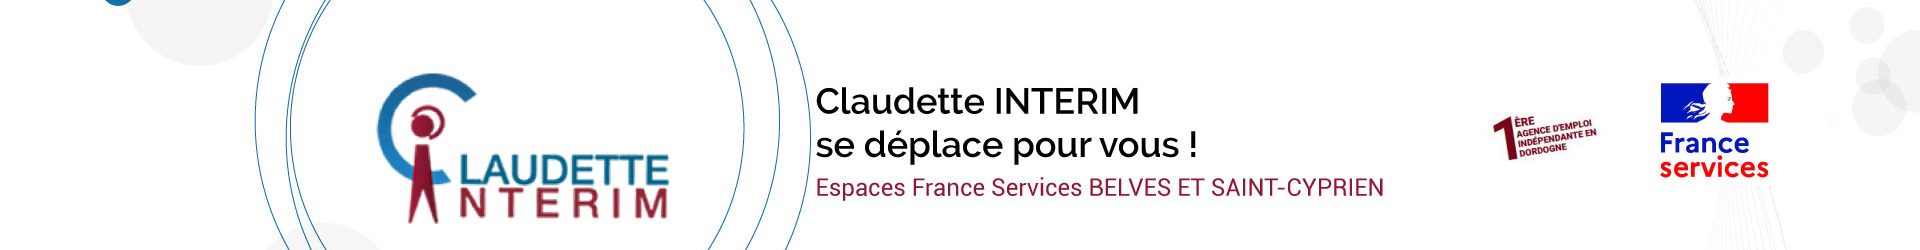 Espaces France Services : Prochaines permanences Claudette interim